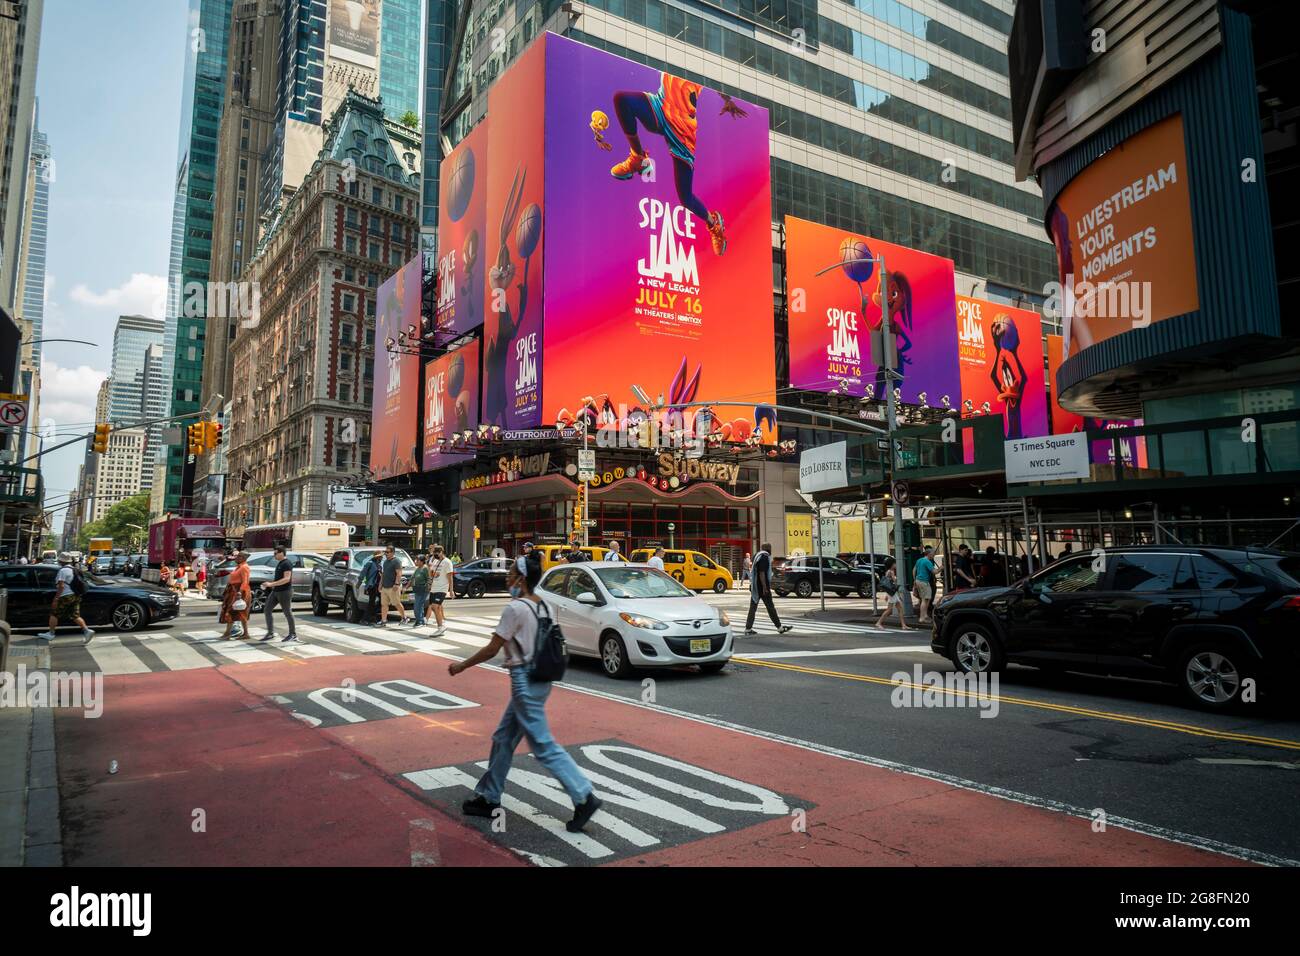 Le film « Space Jam: A New Legacy » est annoncé dans Times Square à New York le jeudi 15 juillet 2021 avant son ouverture du vendredi. (© Richard B. Levine) Banque D'Images